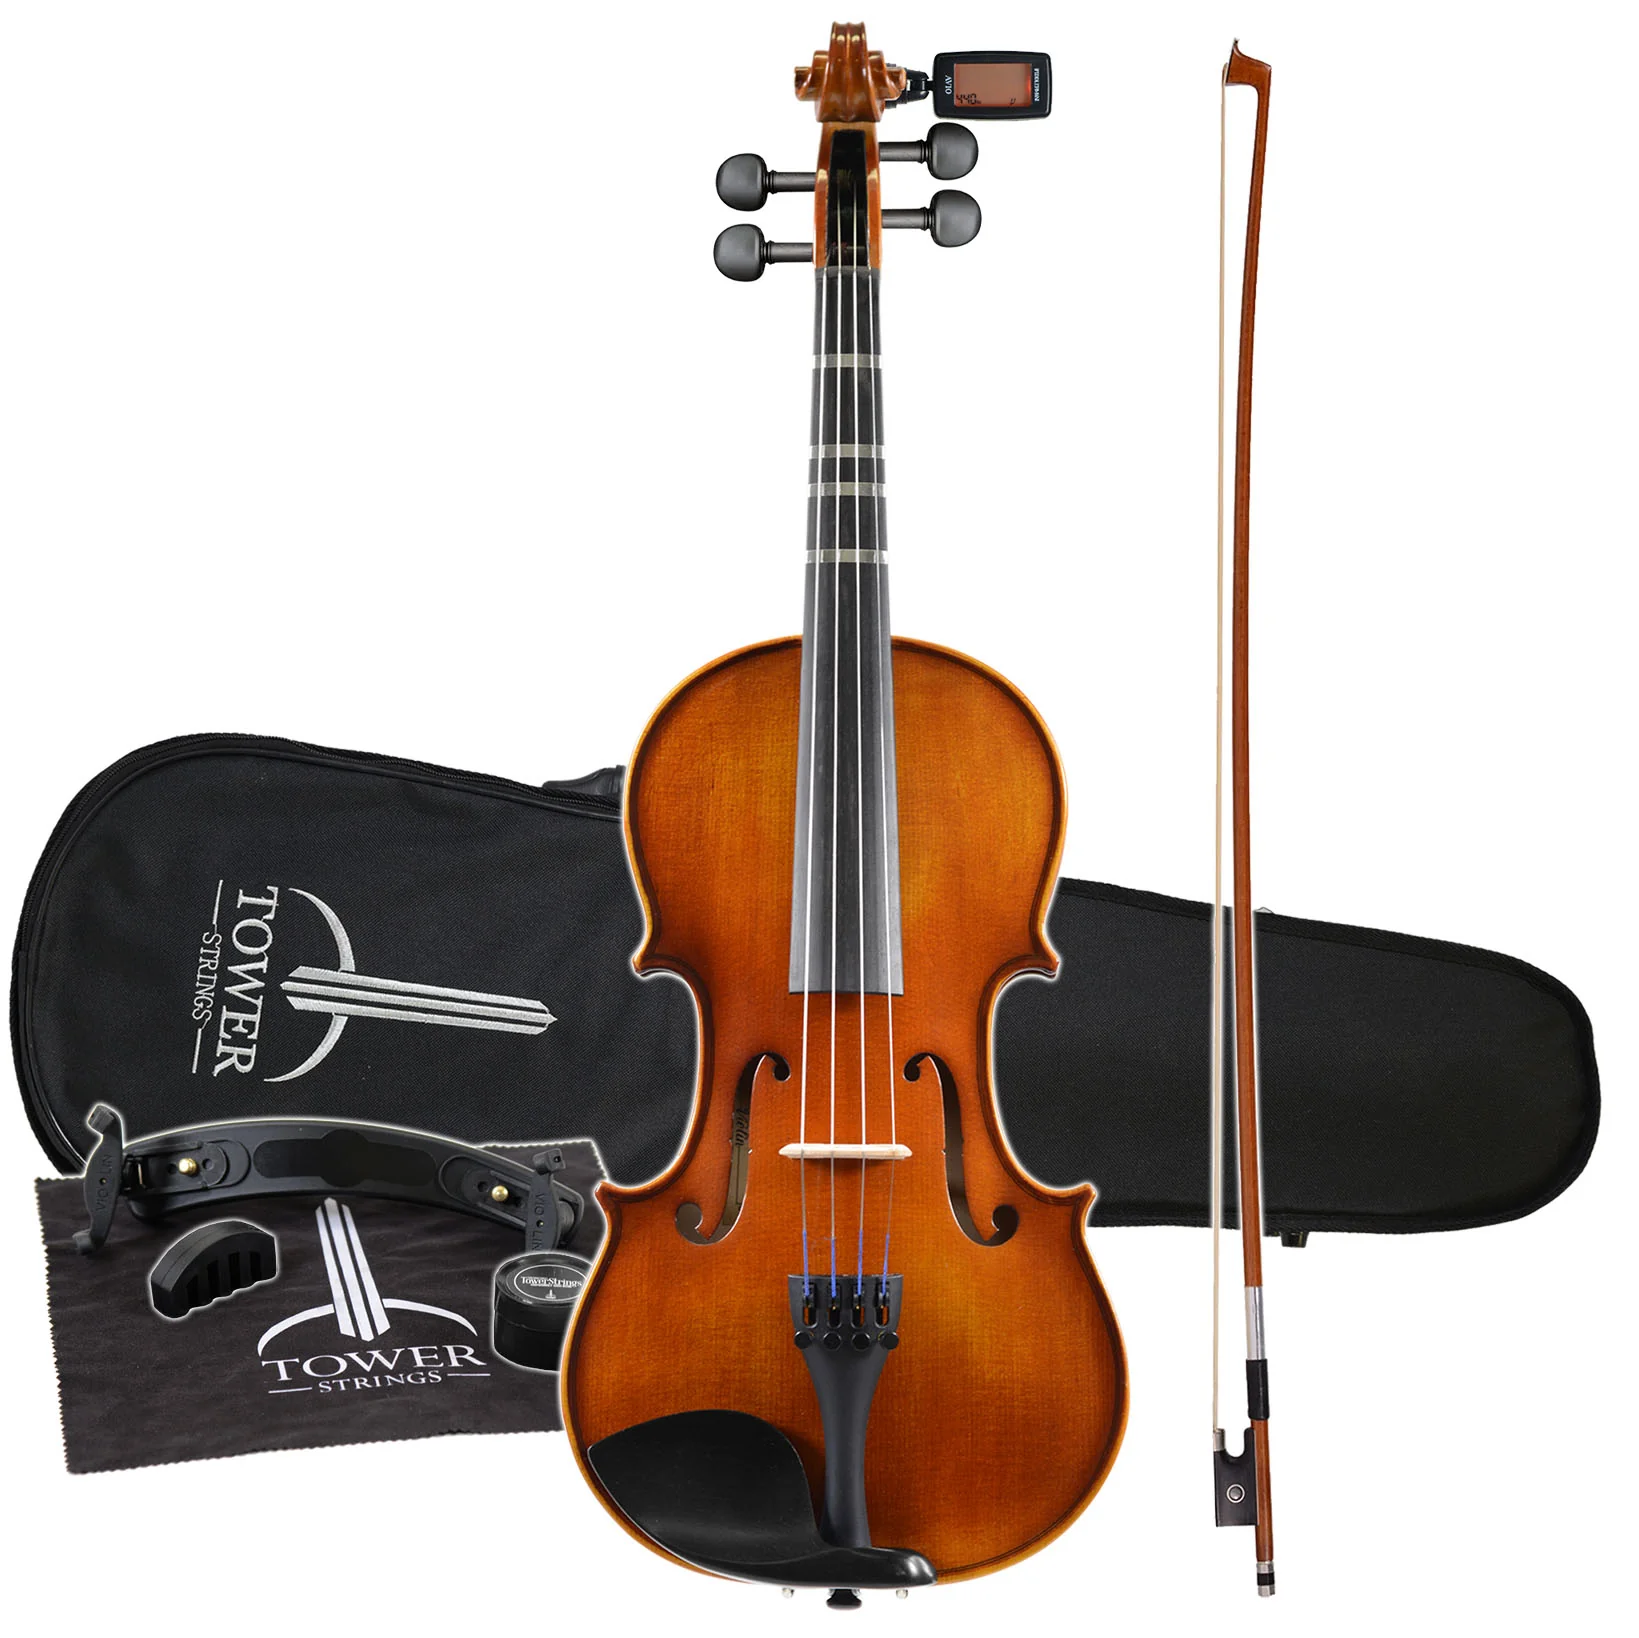 Скрипка Tower Strings Entertainer EasyTune™ Violin Bundle